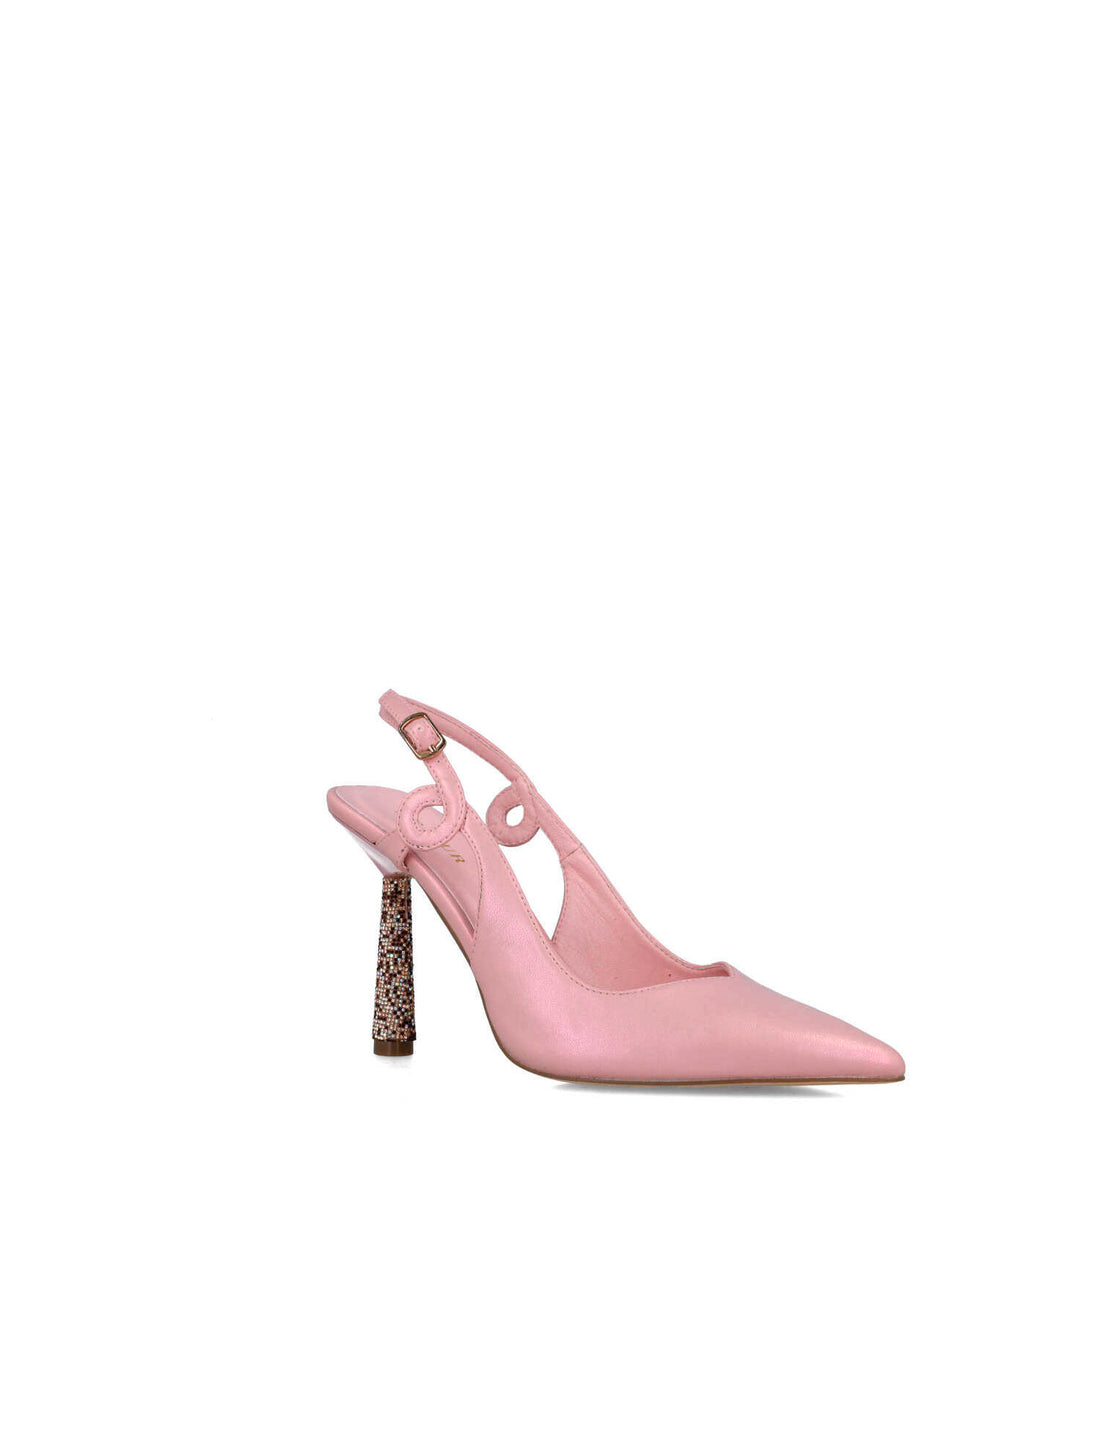 Pink Slingback Pumps With Embellished Heel_24781_97_02